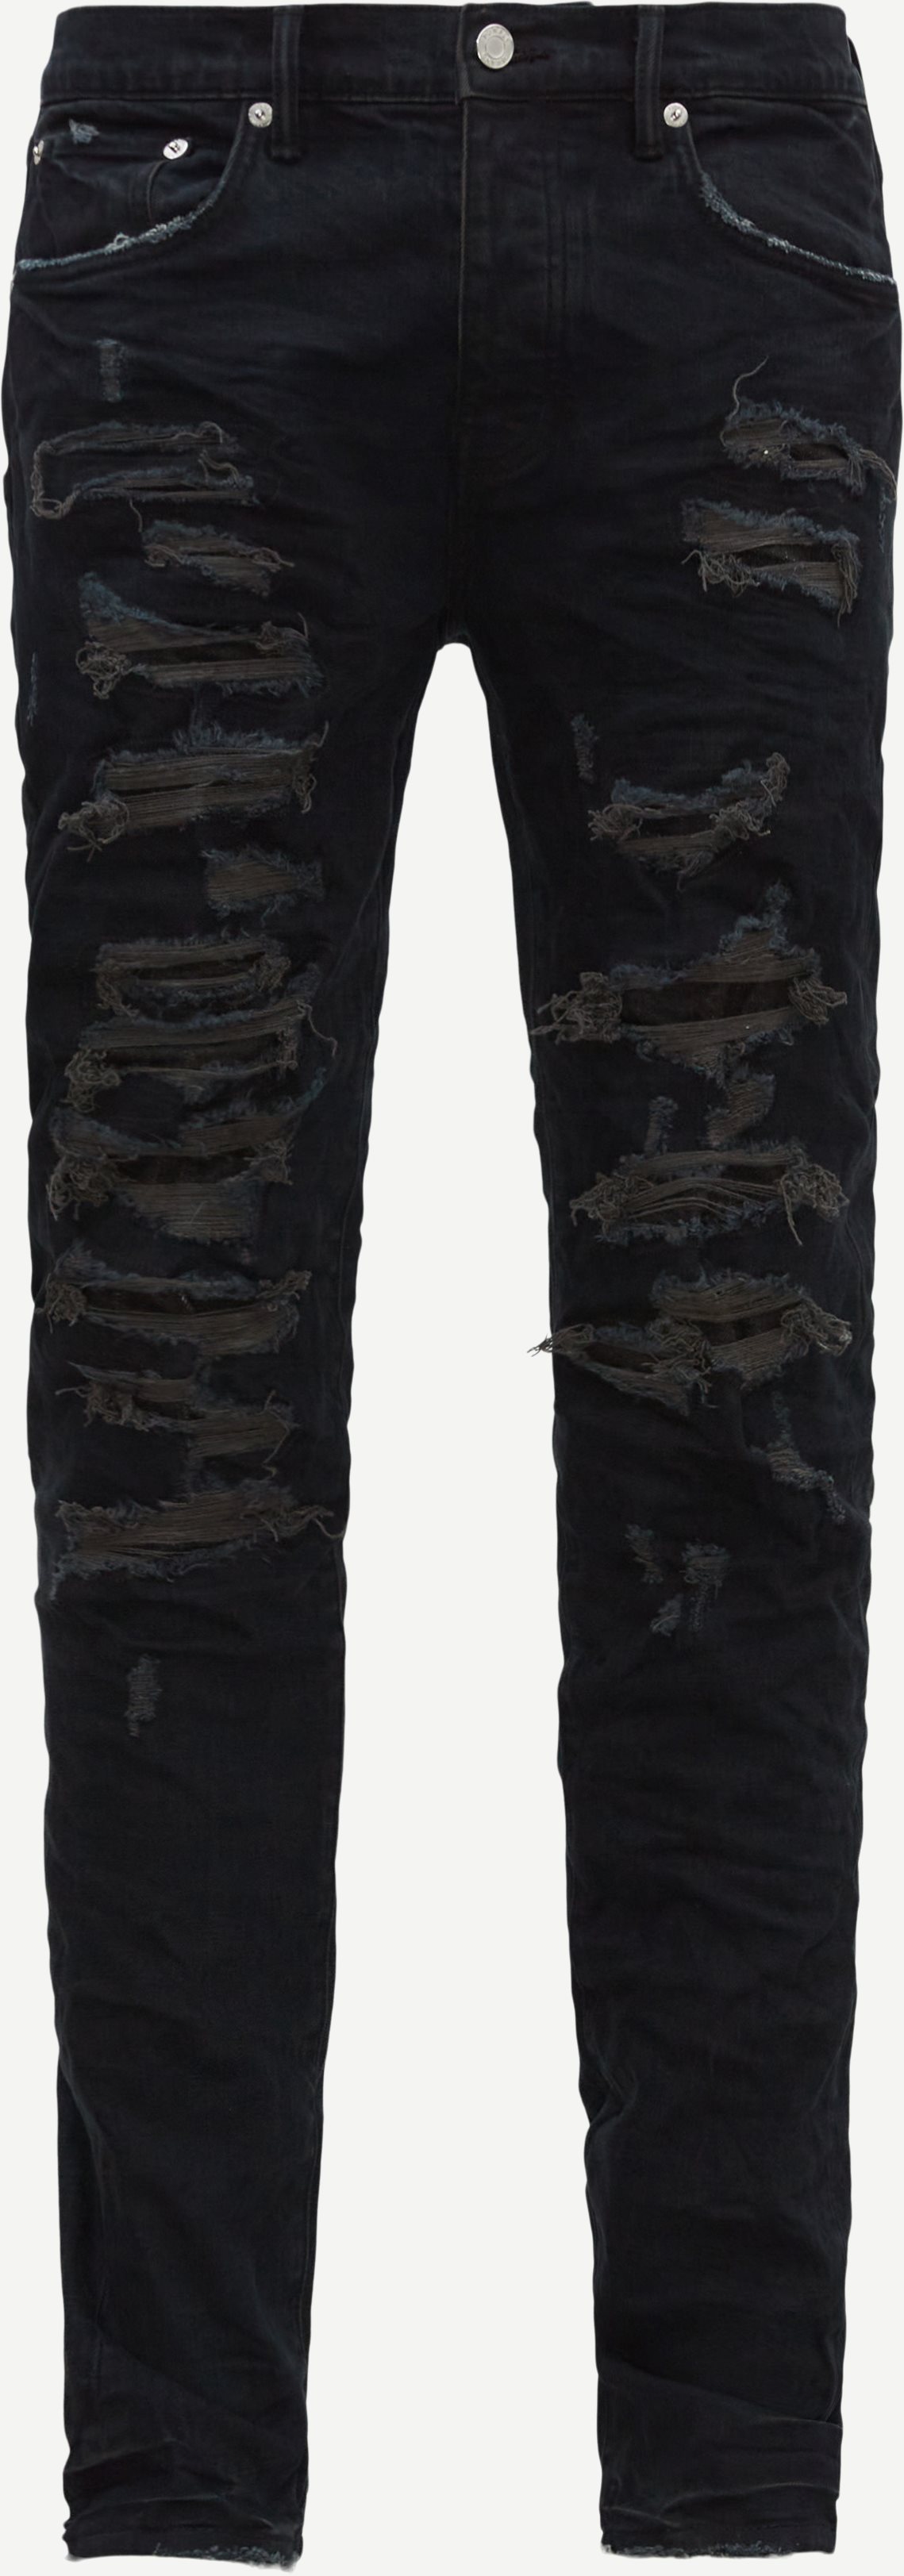 PURPLE Jeans P001-BLDR123 Sort